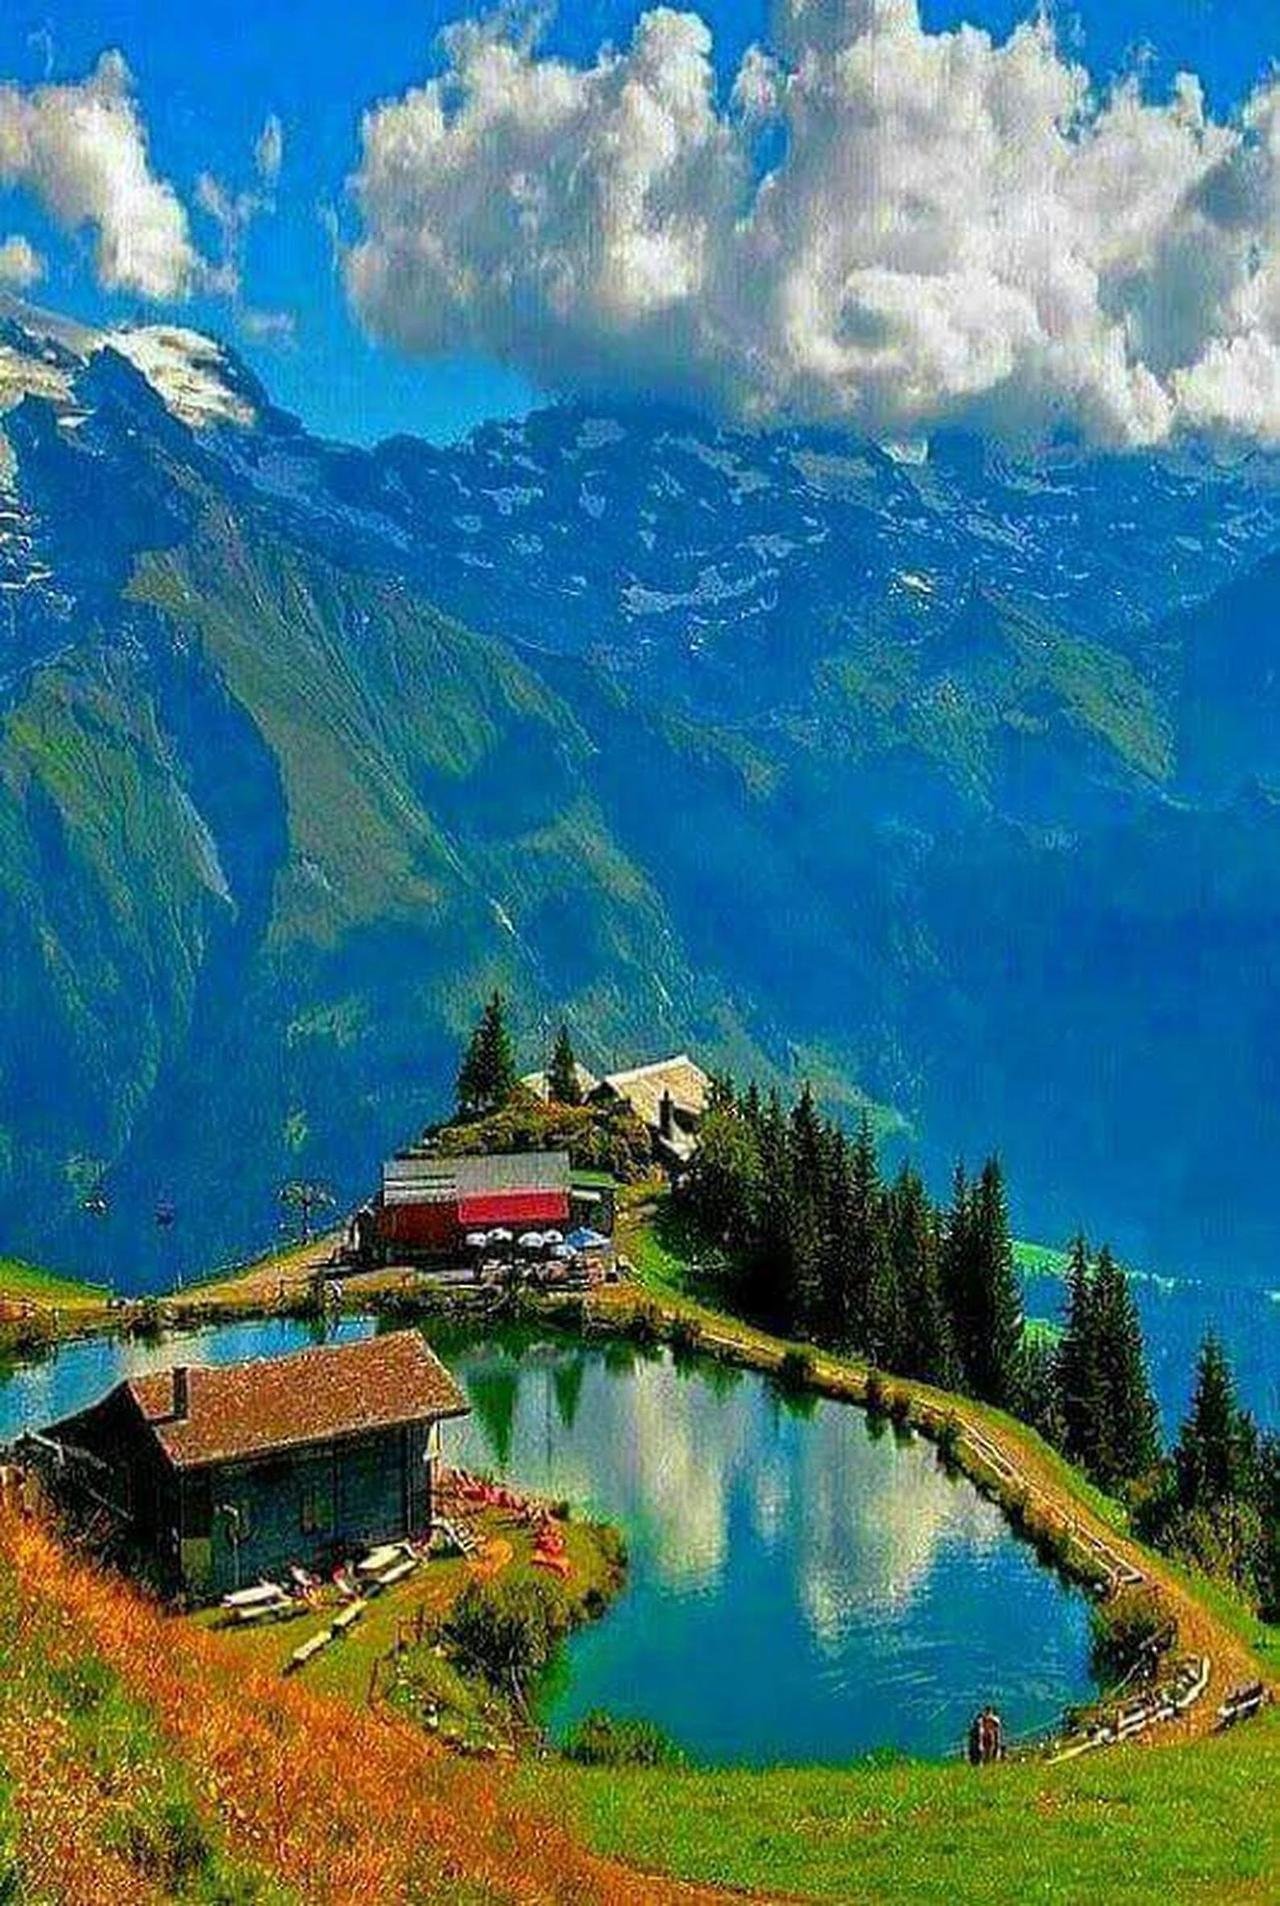 Beautiful place. Озеро Зееальп, Швейцария. Румыния Альпы. Швейцария манзарапари. Швейцария природа красоты Альп.